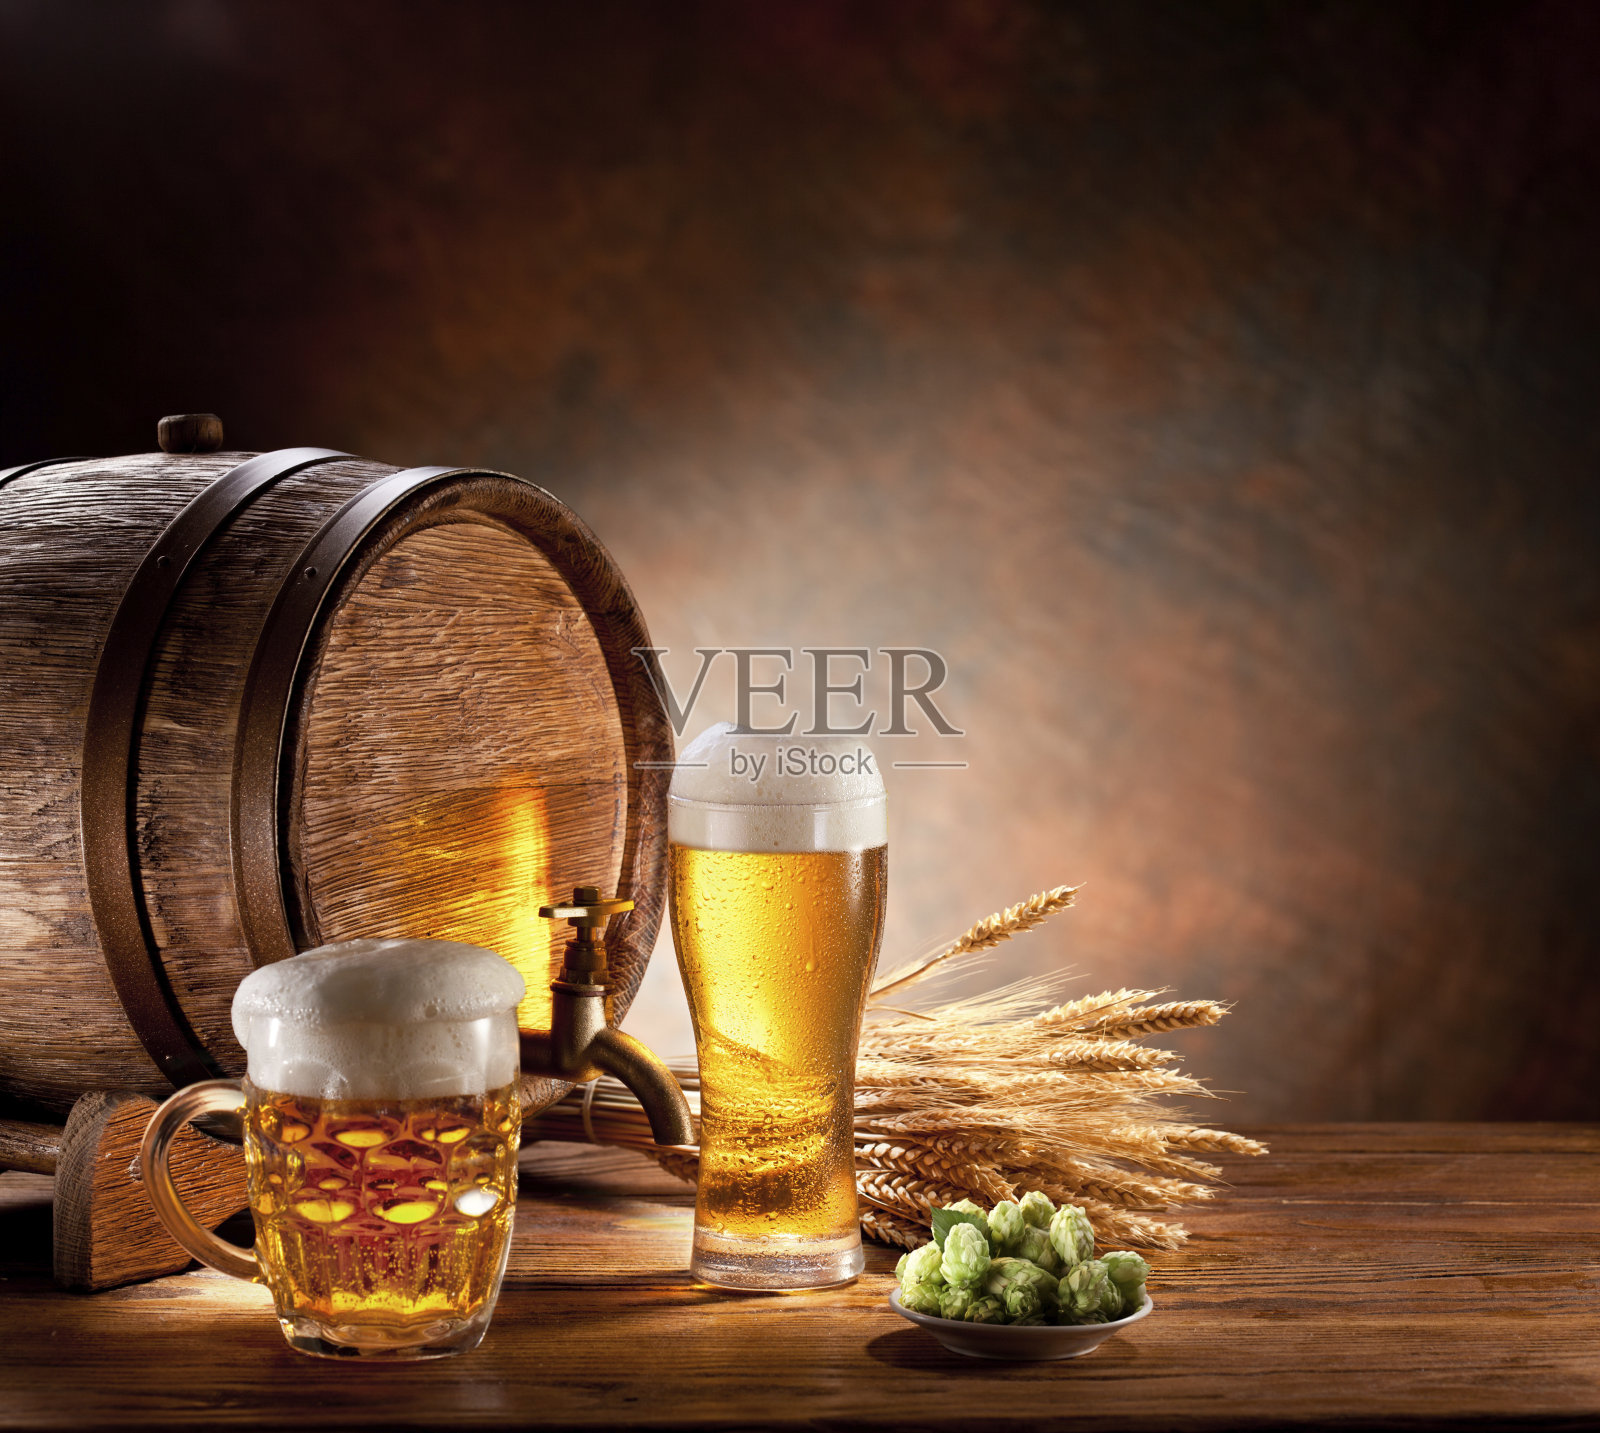 木桌上放着一桶啤酒和满杯的玻璃杯照片摄影图片